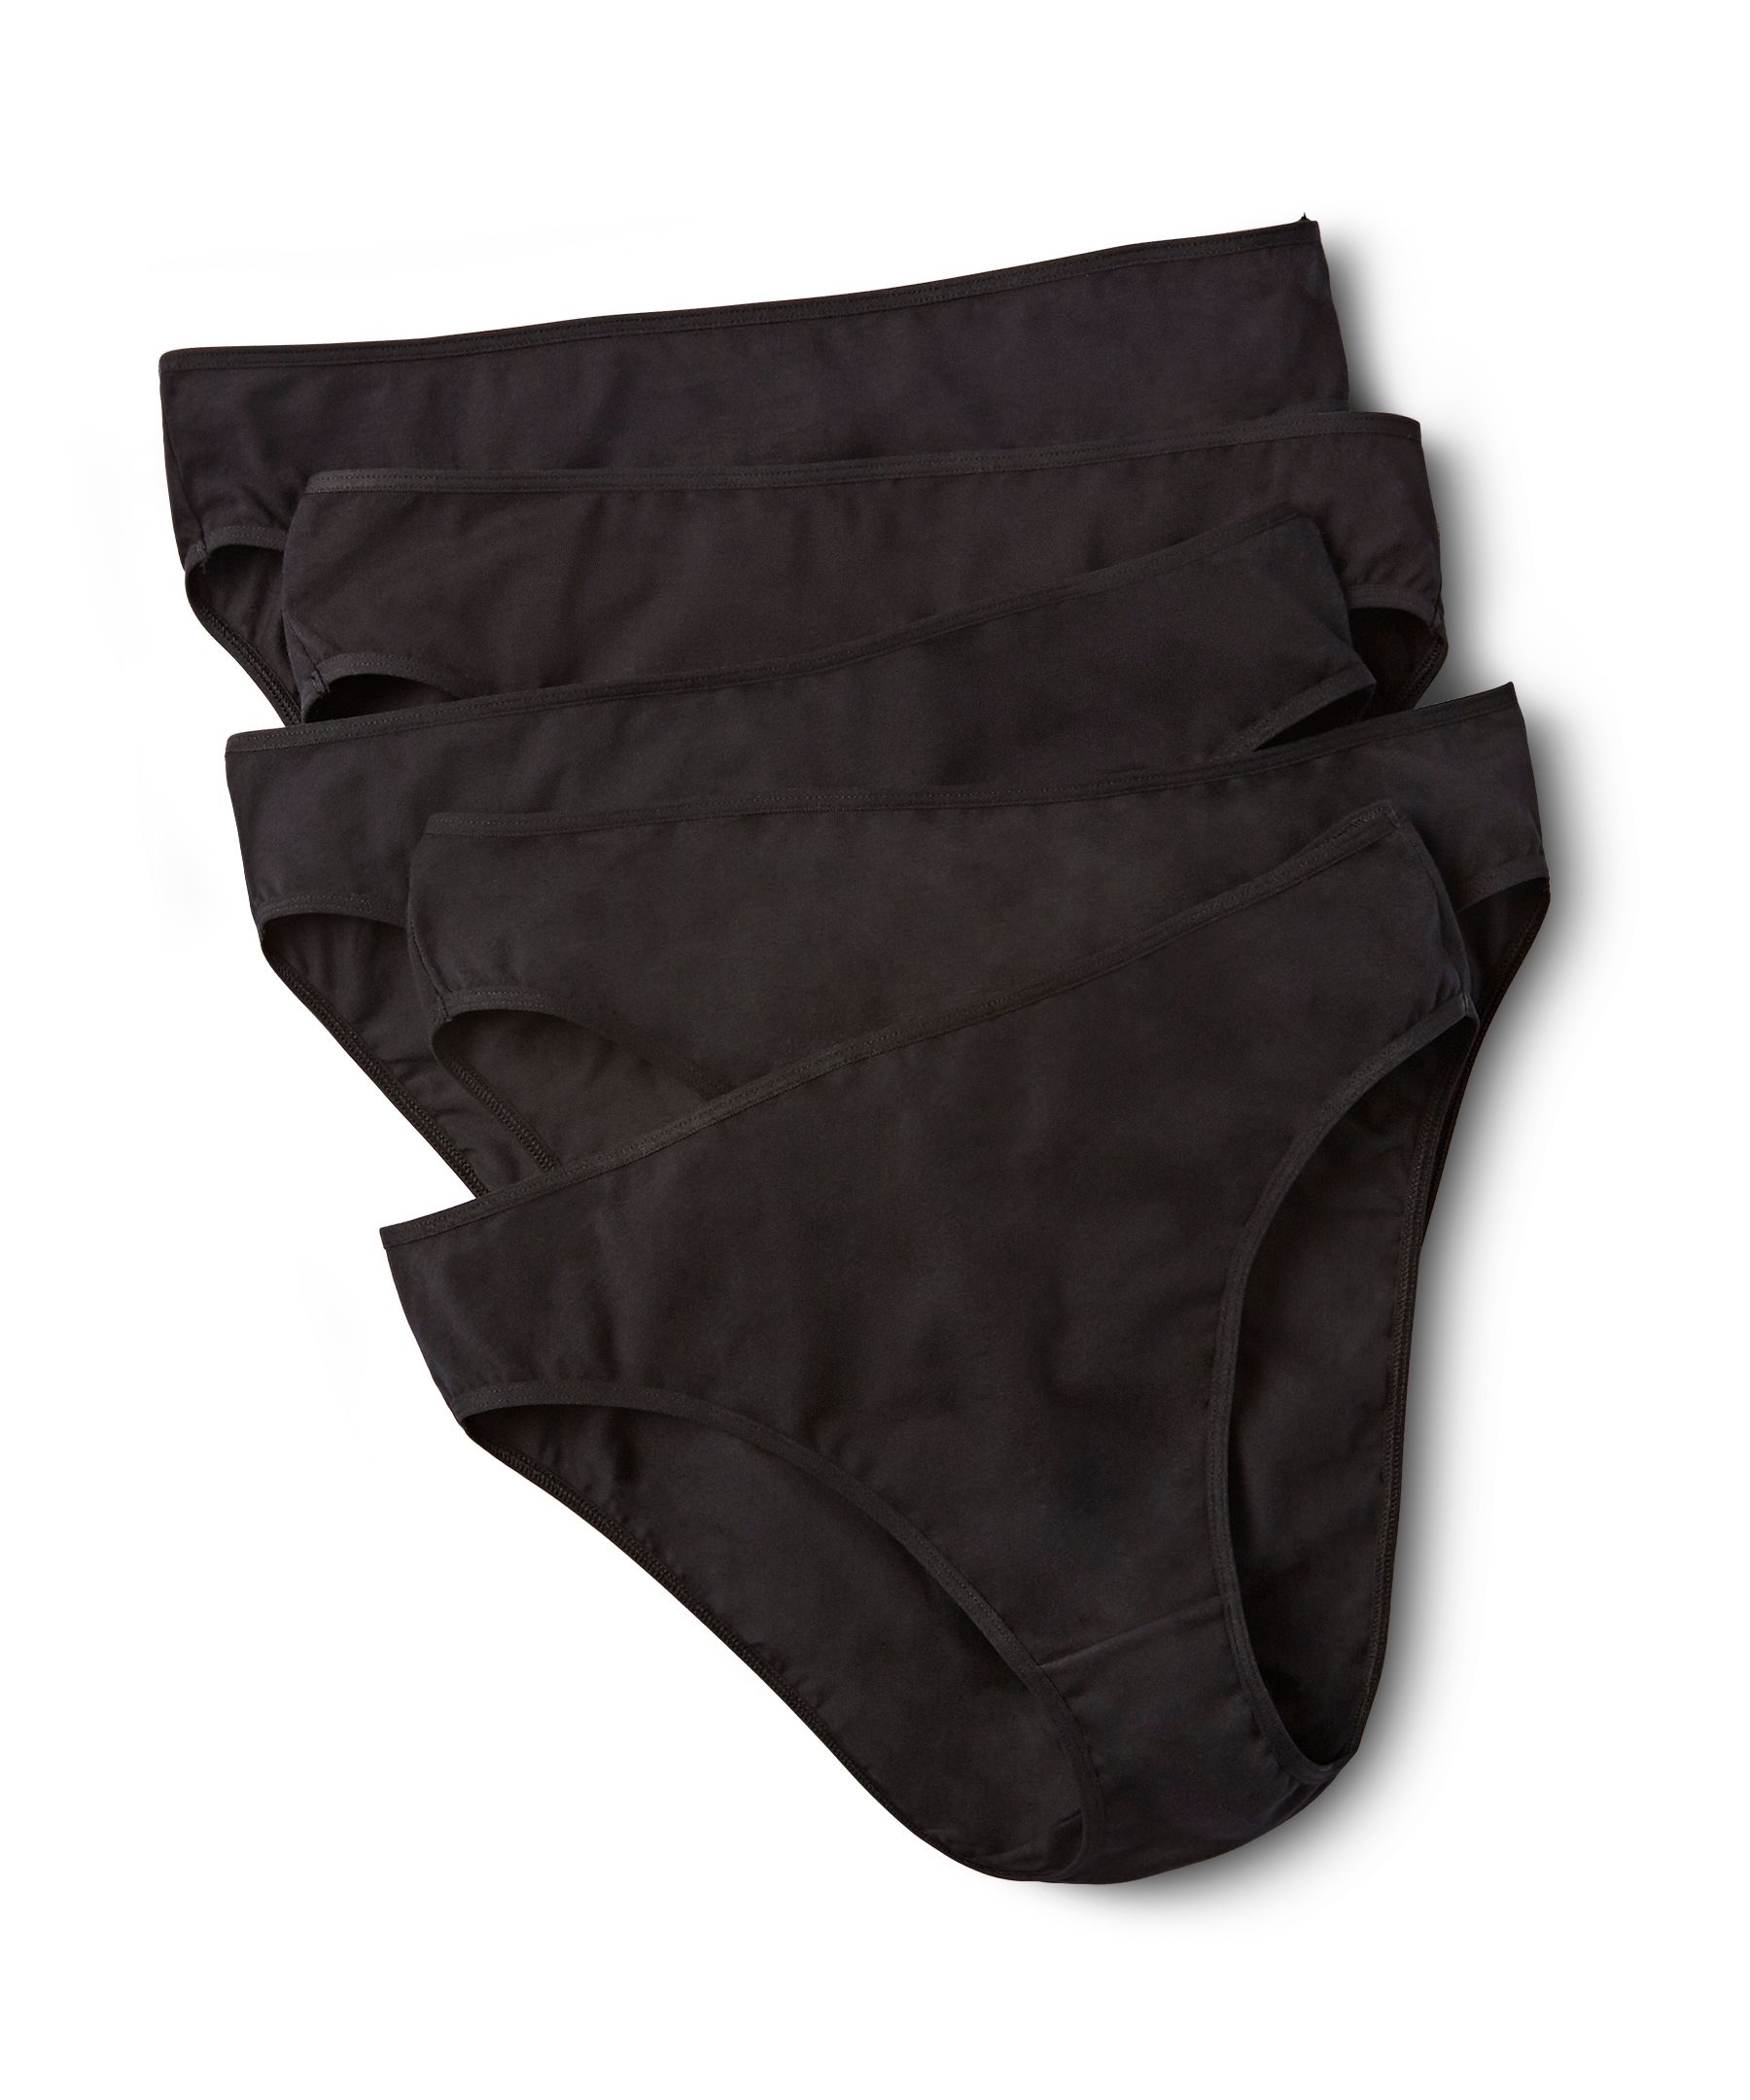 Buy Hanes Women's Cotton Hi-Cut Underwear, 6-Pack Online at